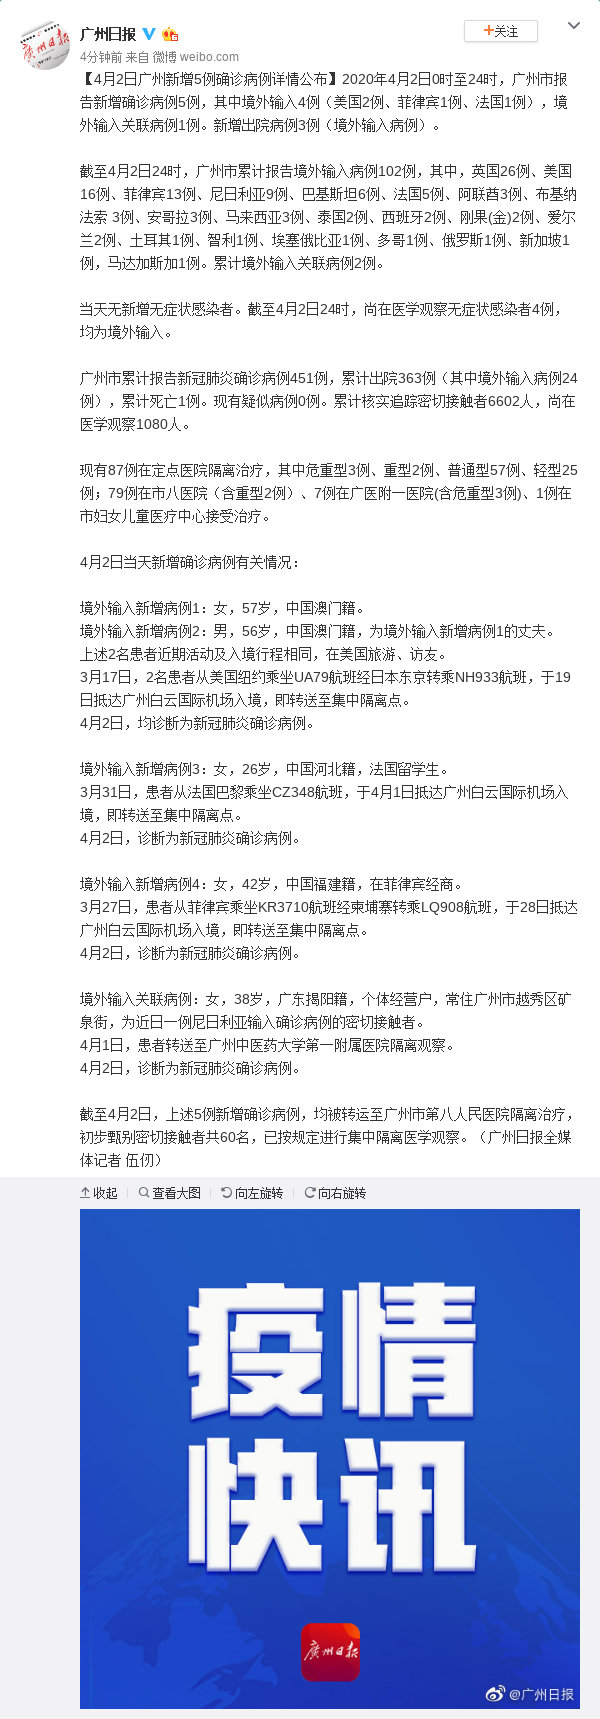 4月2日广州新增5例确诊病例详情公布